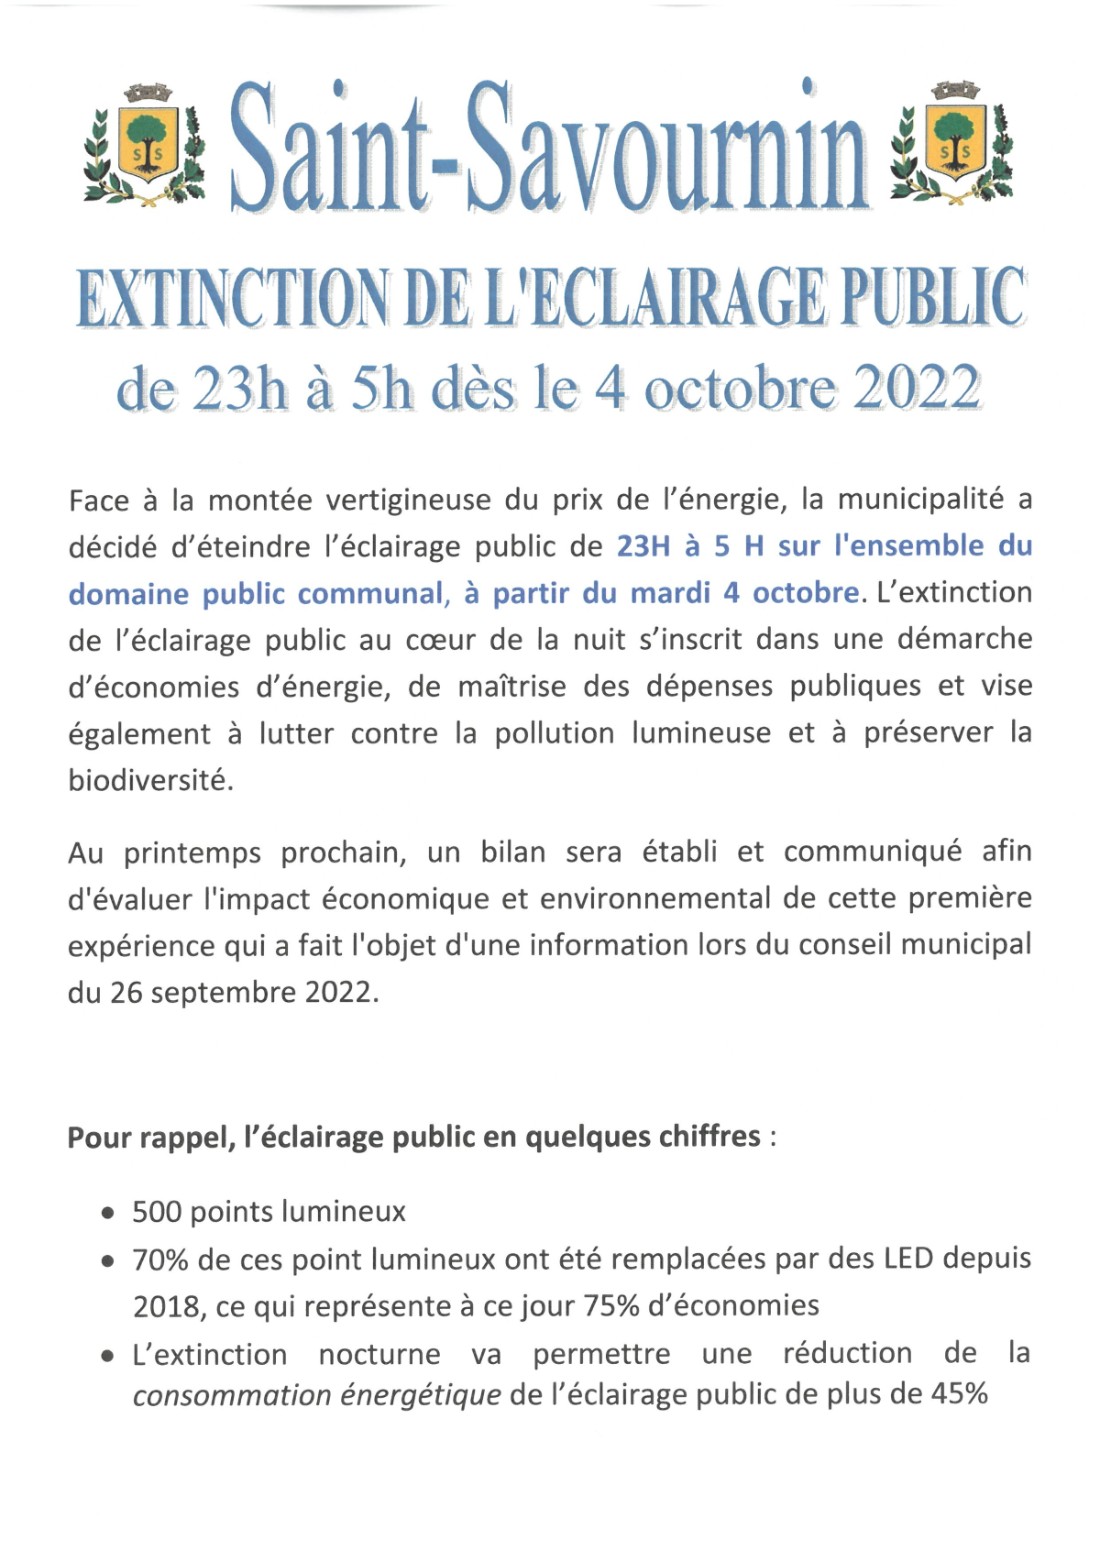 Mairie Saint-Savournin extinction éclairage public nocturne de 23h à 5h du matin dès le 4 oct 2022